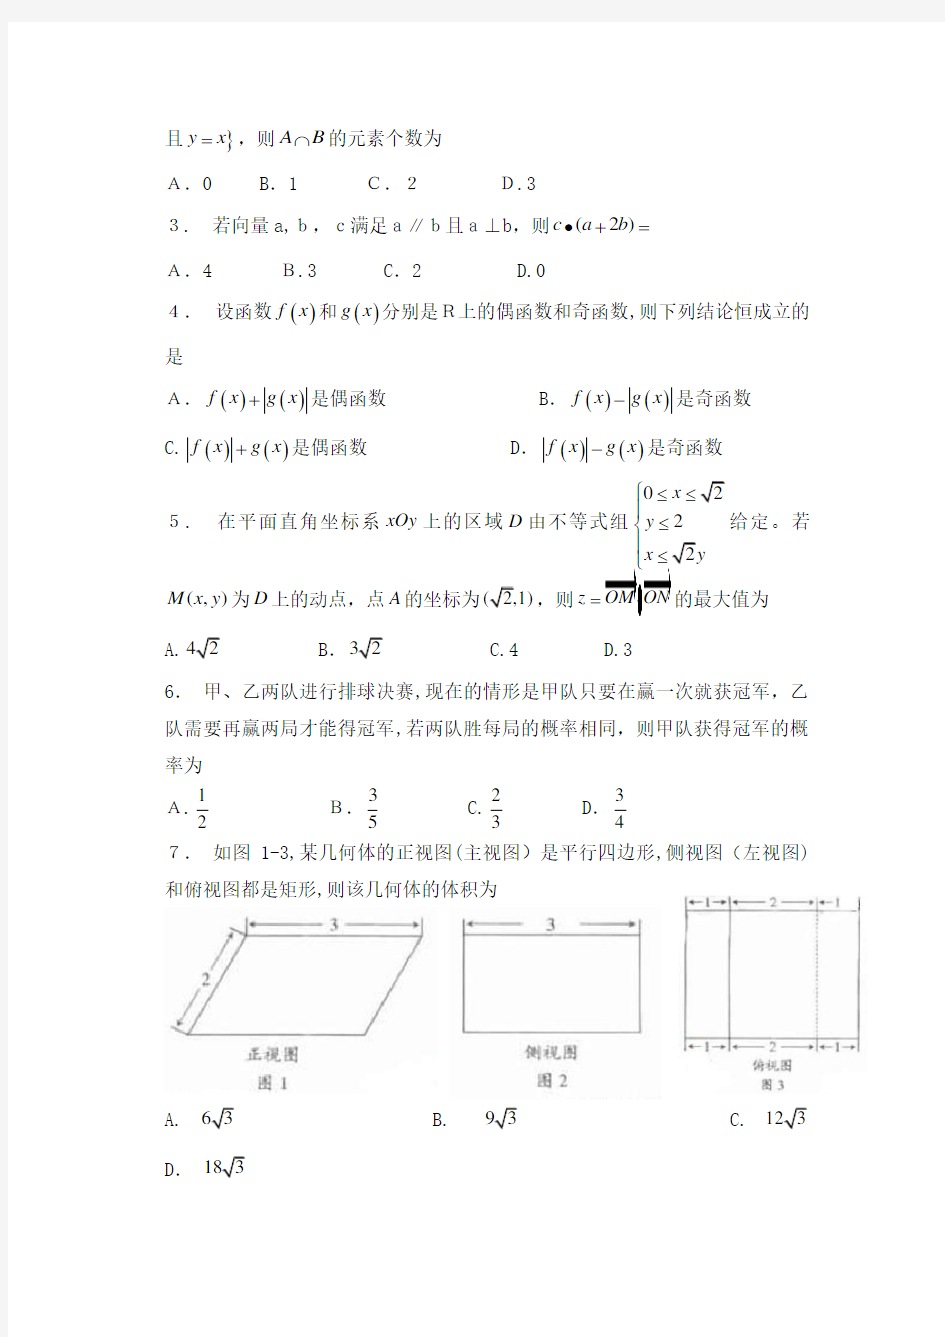 2011年广东高考理科数学试题及标准答案(纯word版)